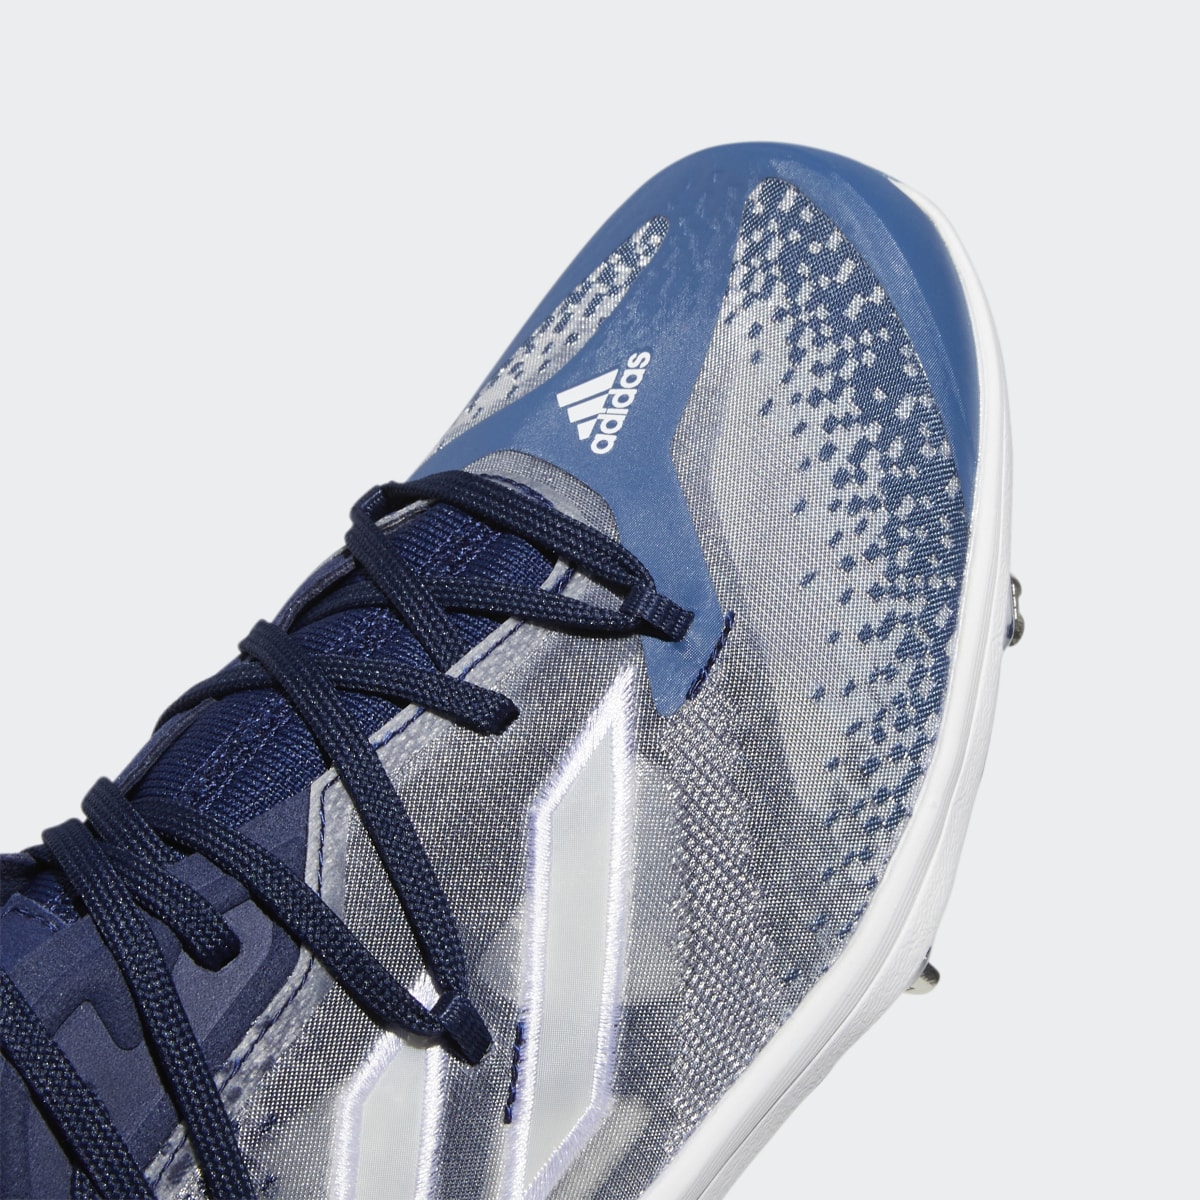 Adidas Adizero Afterburner NWV Cleats. 9